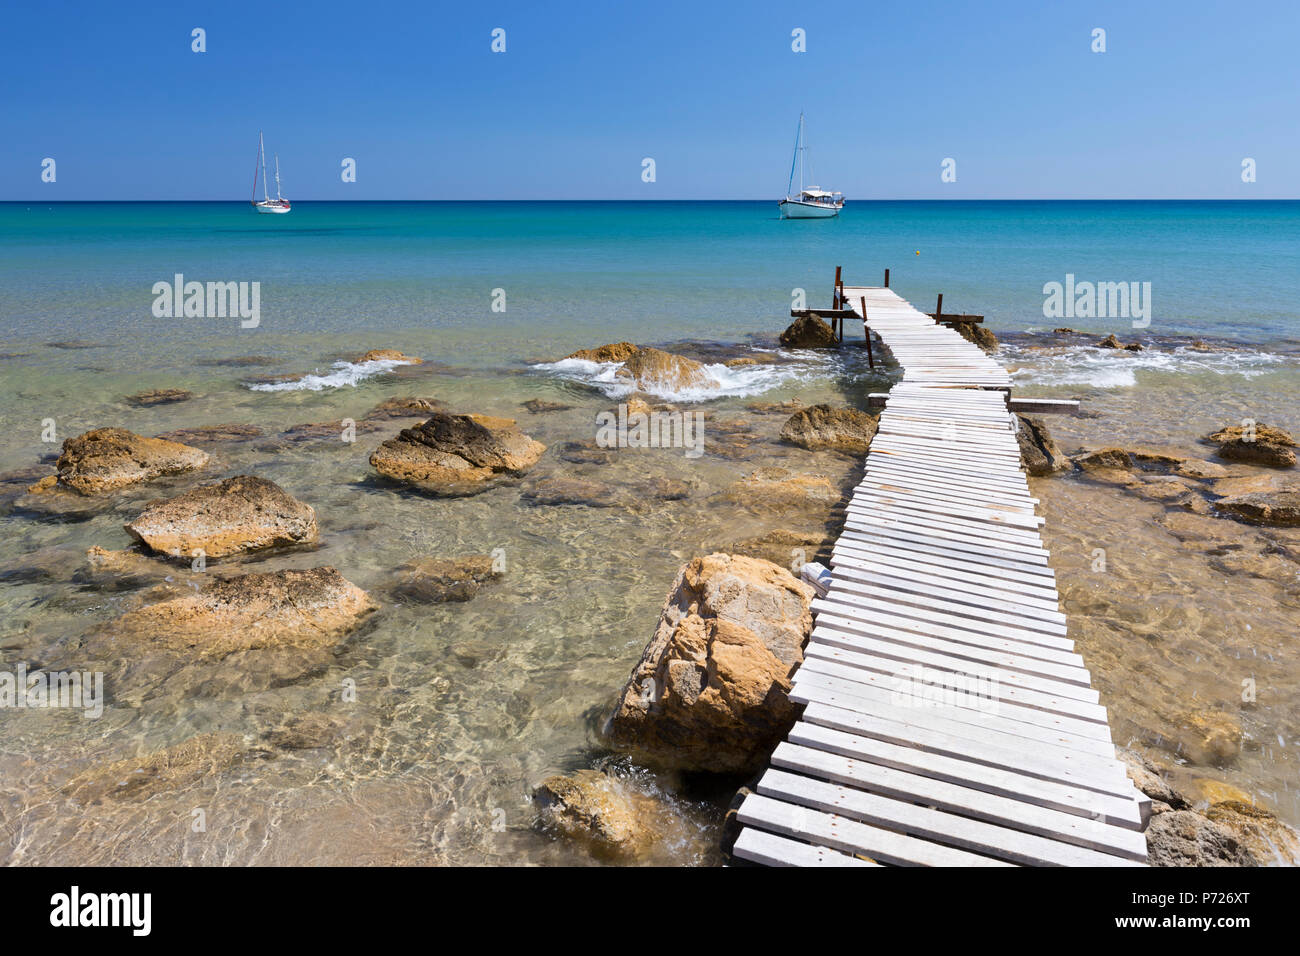 Jetée en bois clair et mer turquoise avec des yachts à Provatas beach, Milos, Cyclades, Mer Égée, îles grecques, Grèce, Europe Banque D'Images